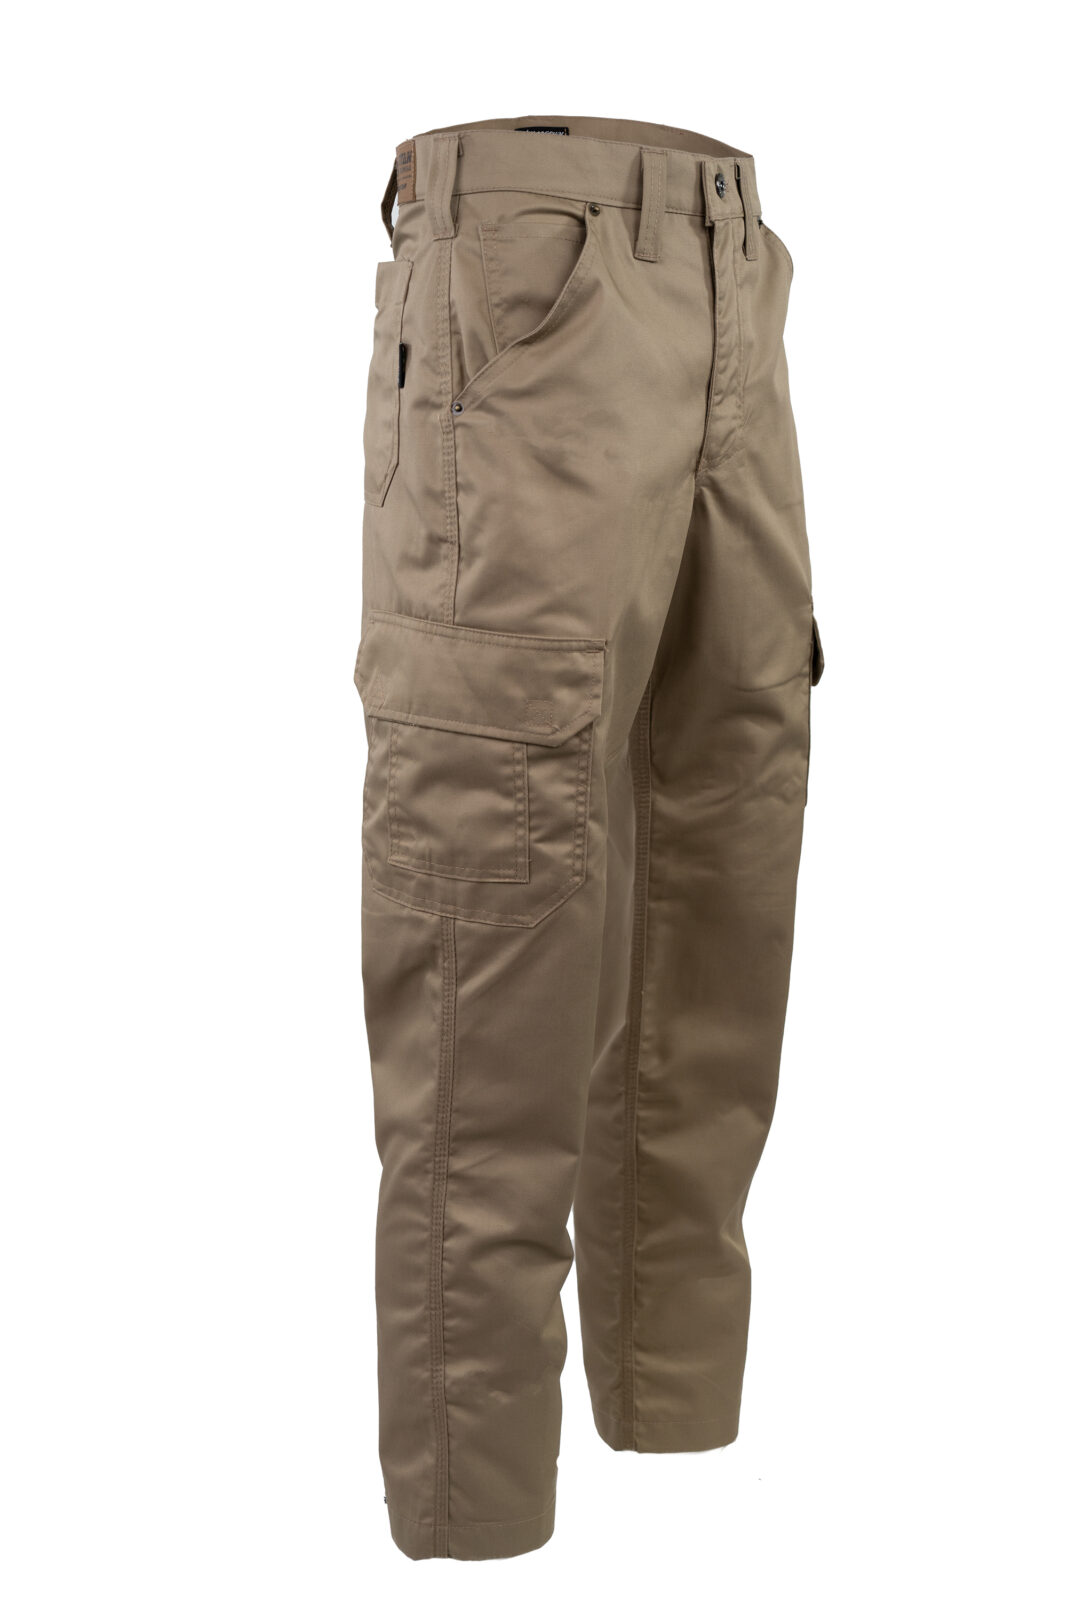 Titan Workwear Khaki Duratex Cargo Trouser - Santon Workwear